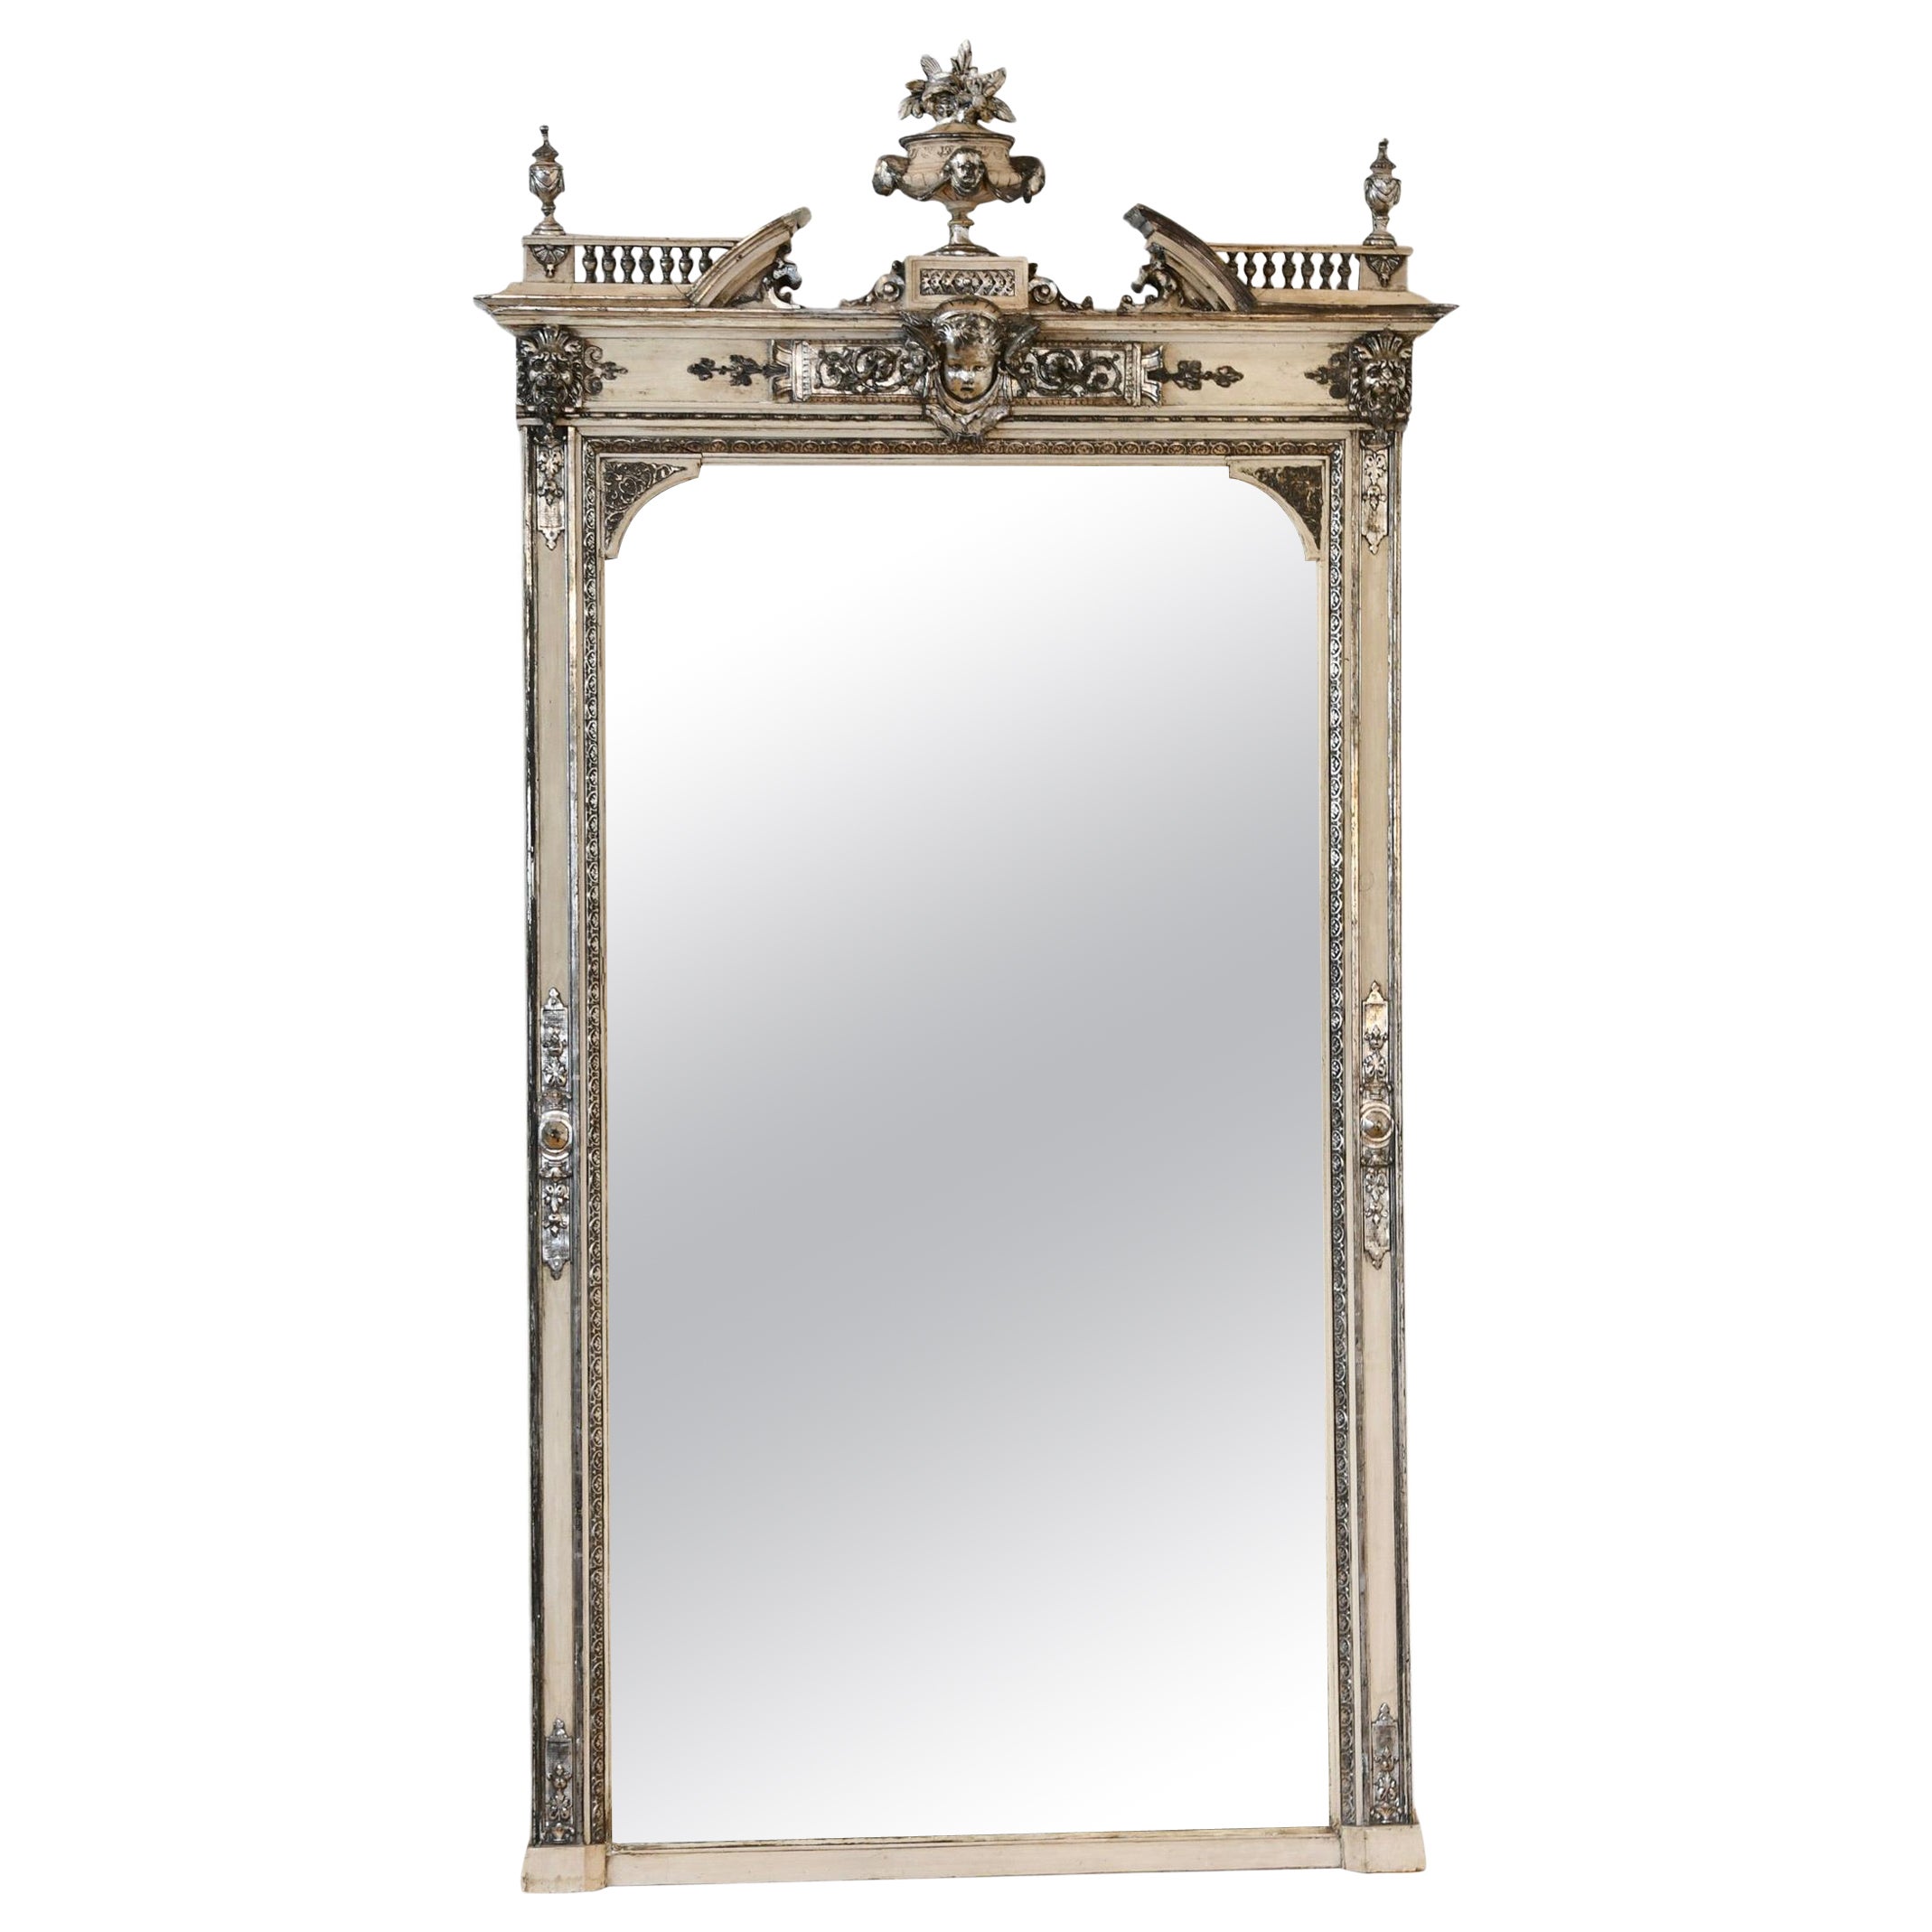 Antique Napoleon III Painted and Silver Gilt Mirror (Miroir peint et argenté)